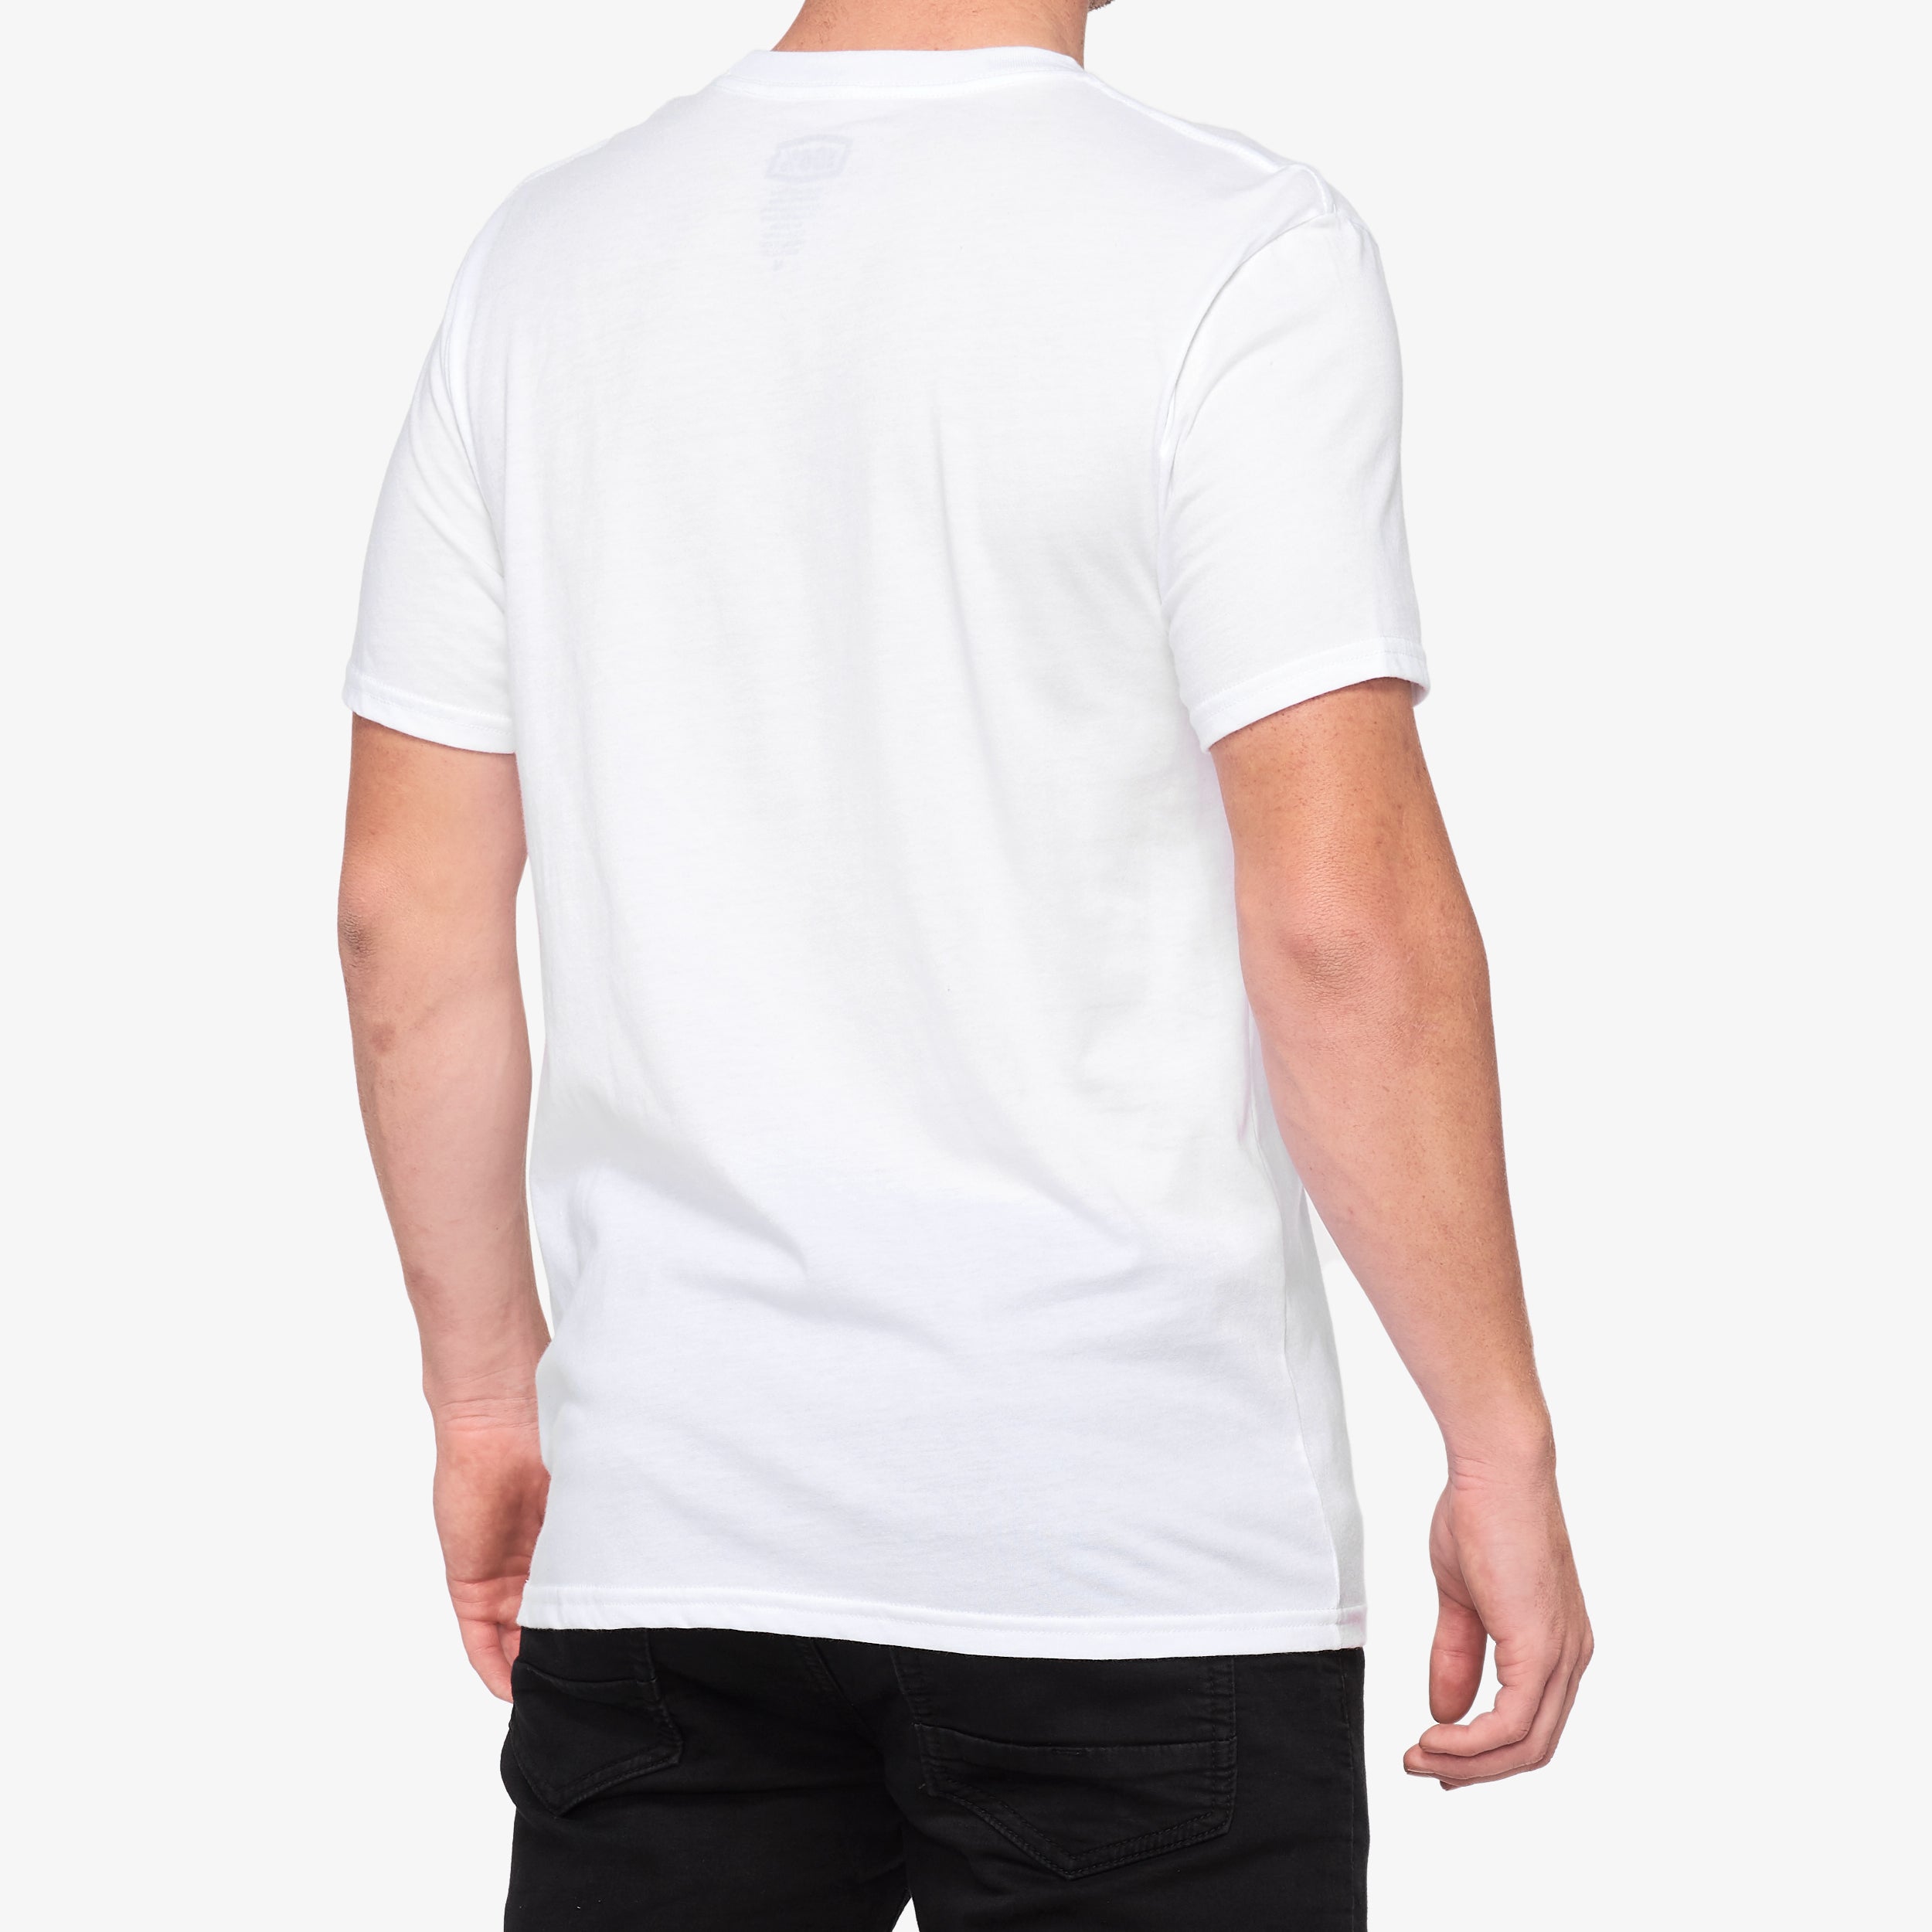 ESSENTIAL T-Shirt - White